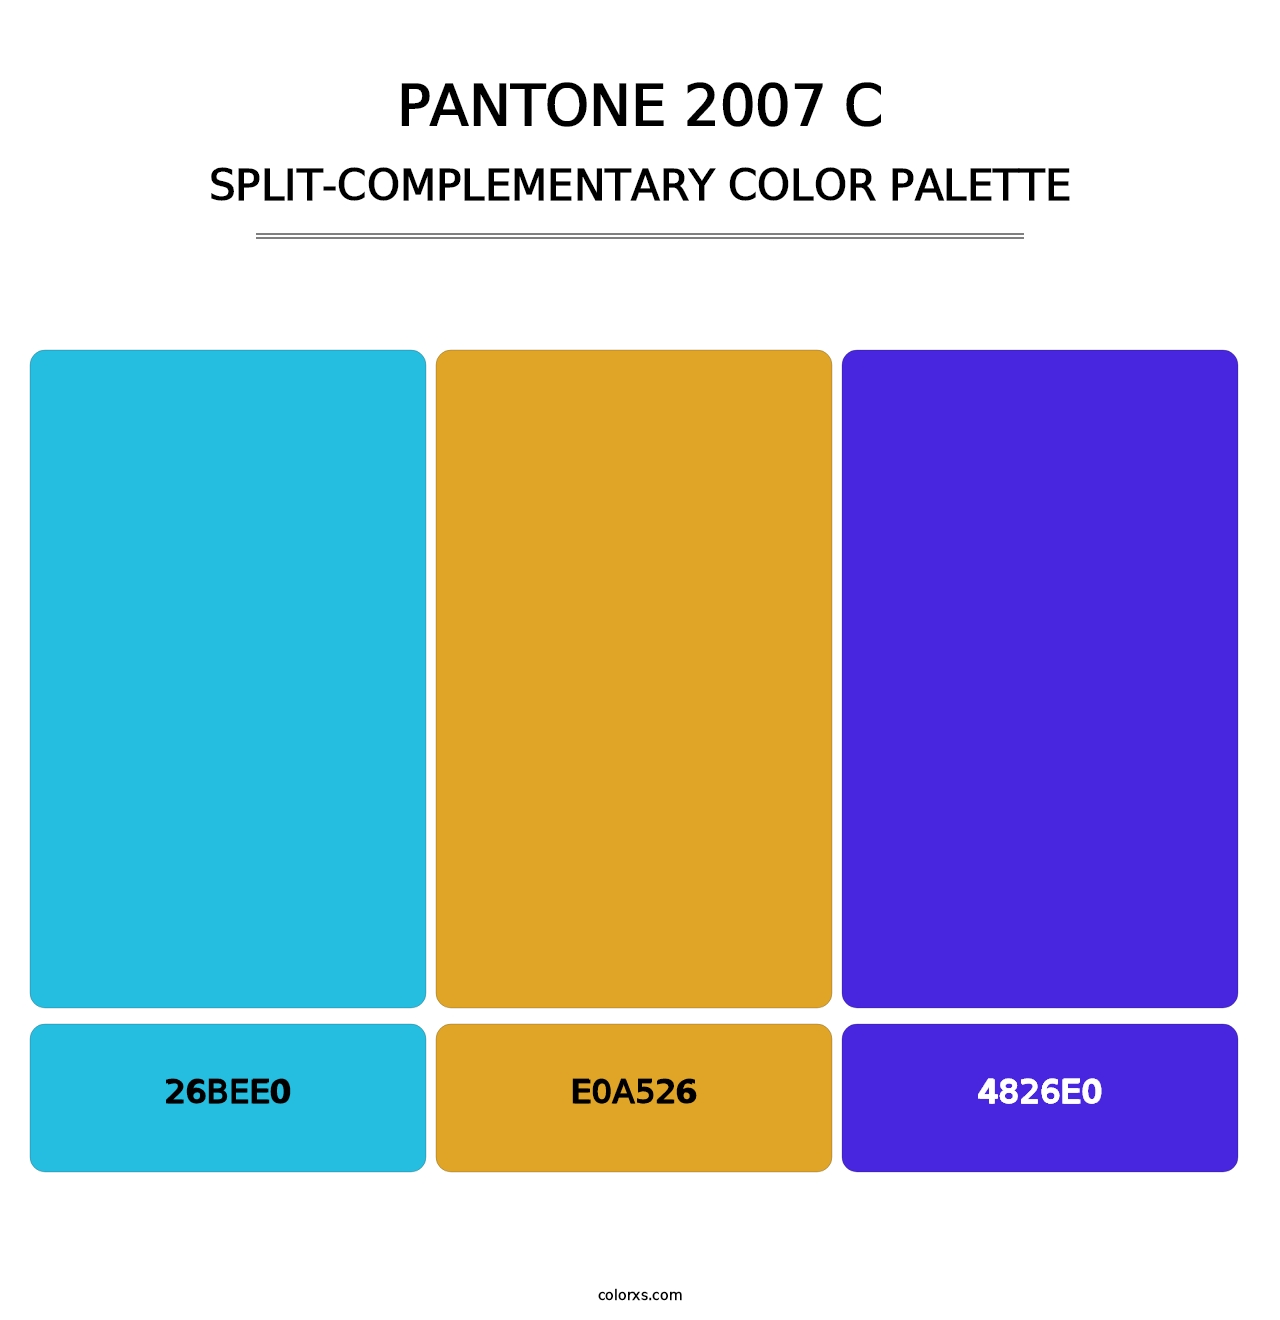 PANTONE 2007 C - Split-Complementary Color Palette